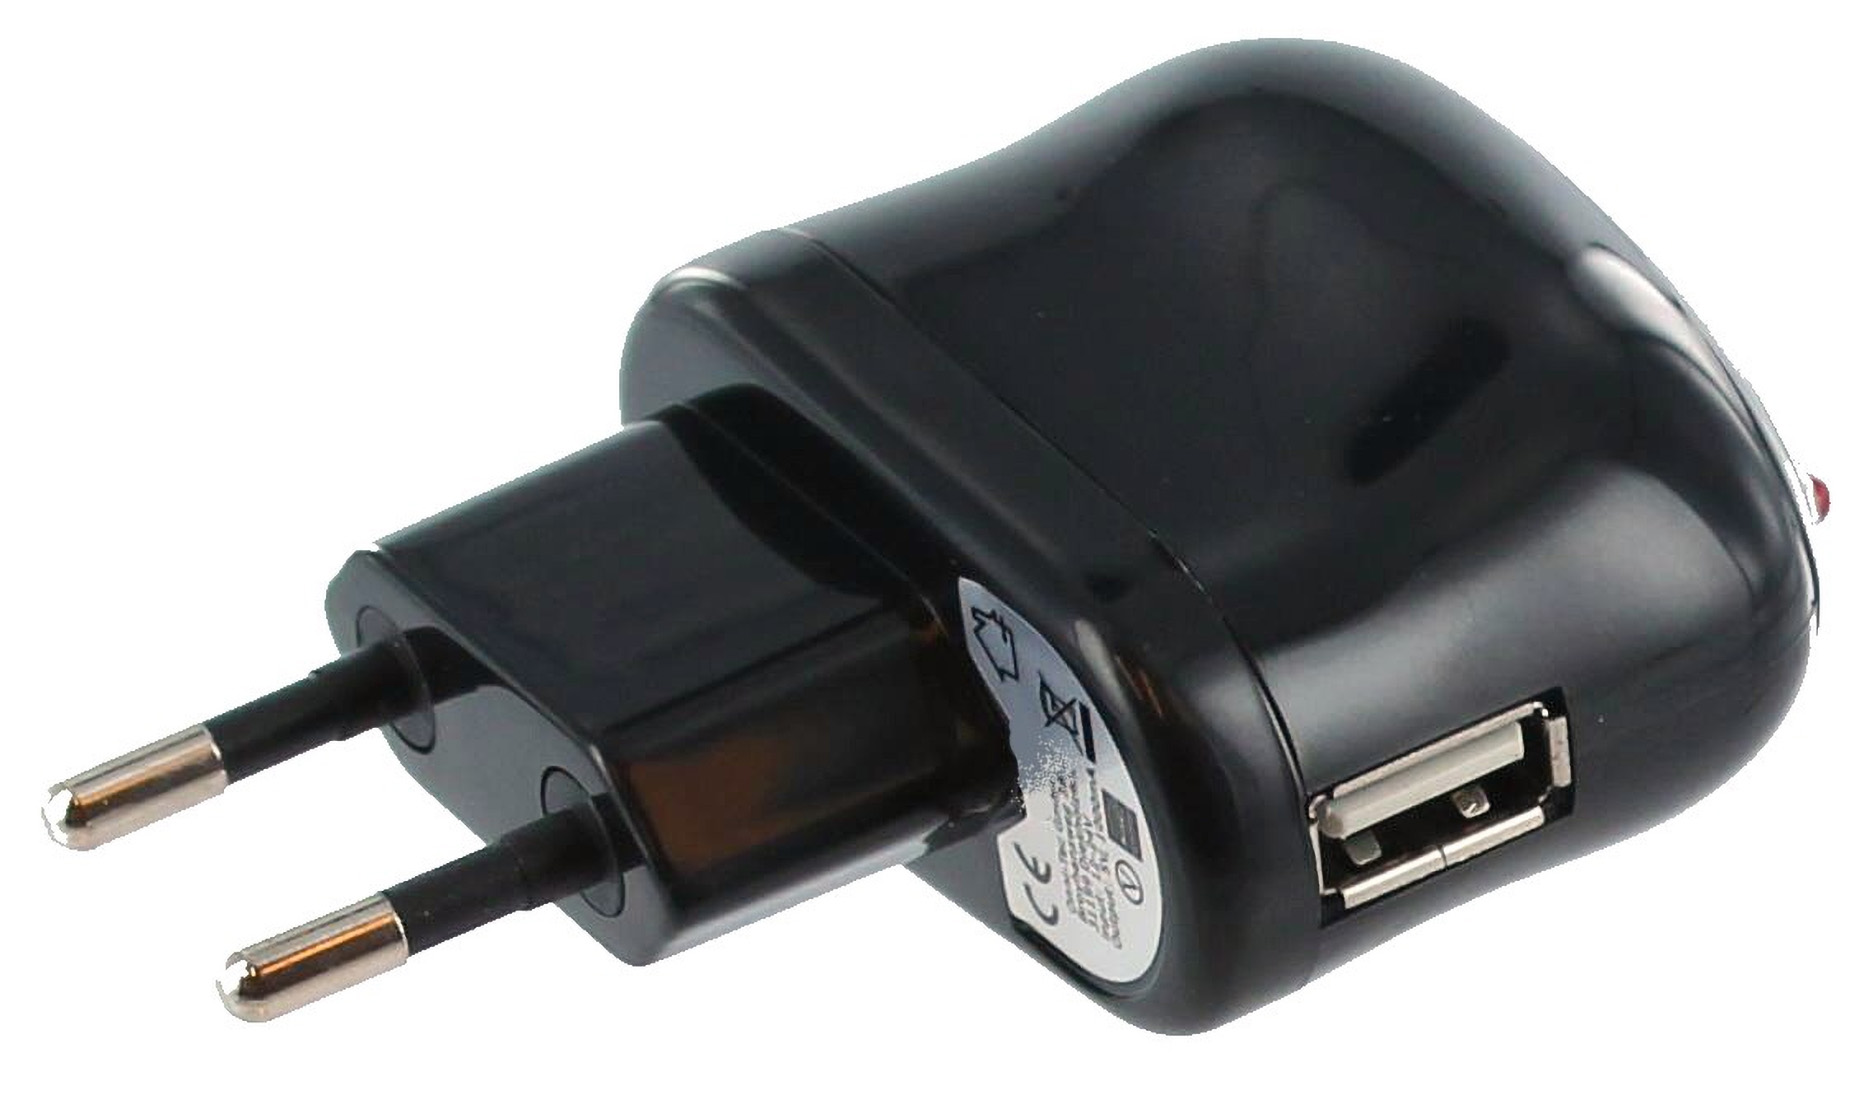 MOBILOTEC USB-Netzteil Nikon mit kompatibel Netzteil/Ladegerät Nikon, EH-73P schwarz